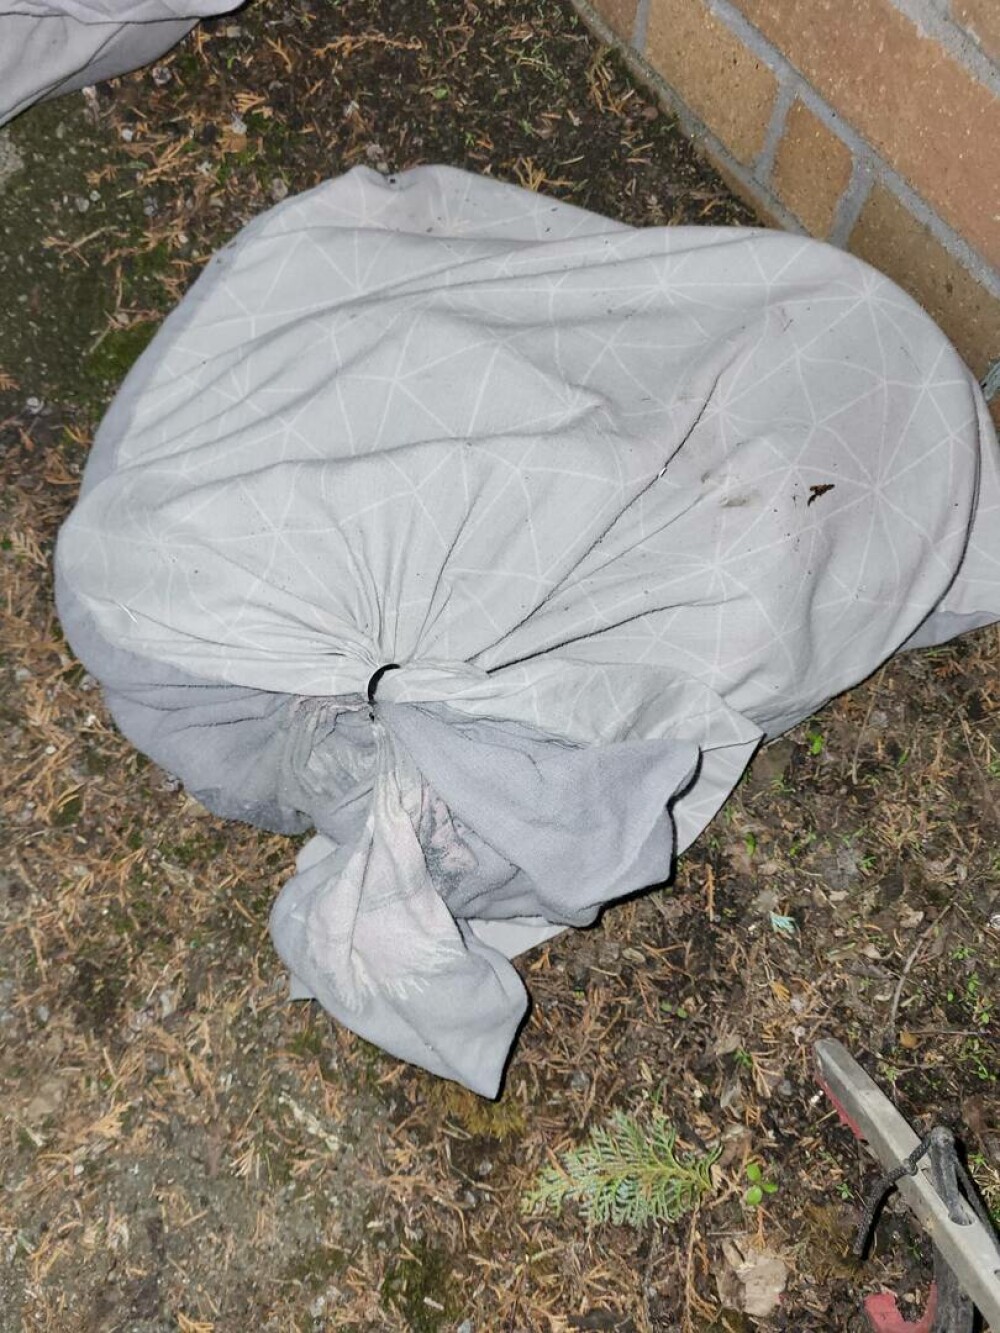 Descoperirea șocantă din gunoi. Ce a găsit un voluntar pe marginea drumului, în mai multe fețe de perne | FOTO - Imaginea 2